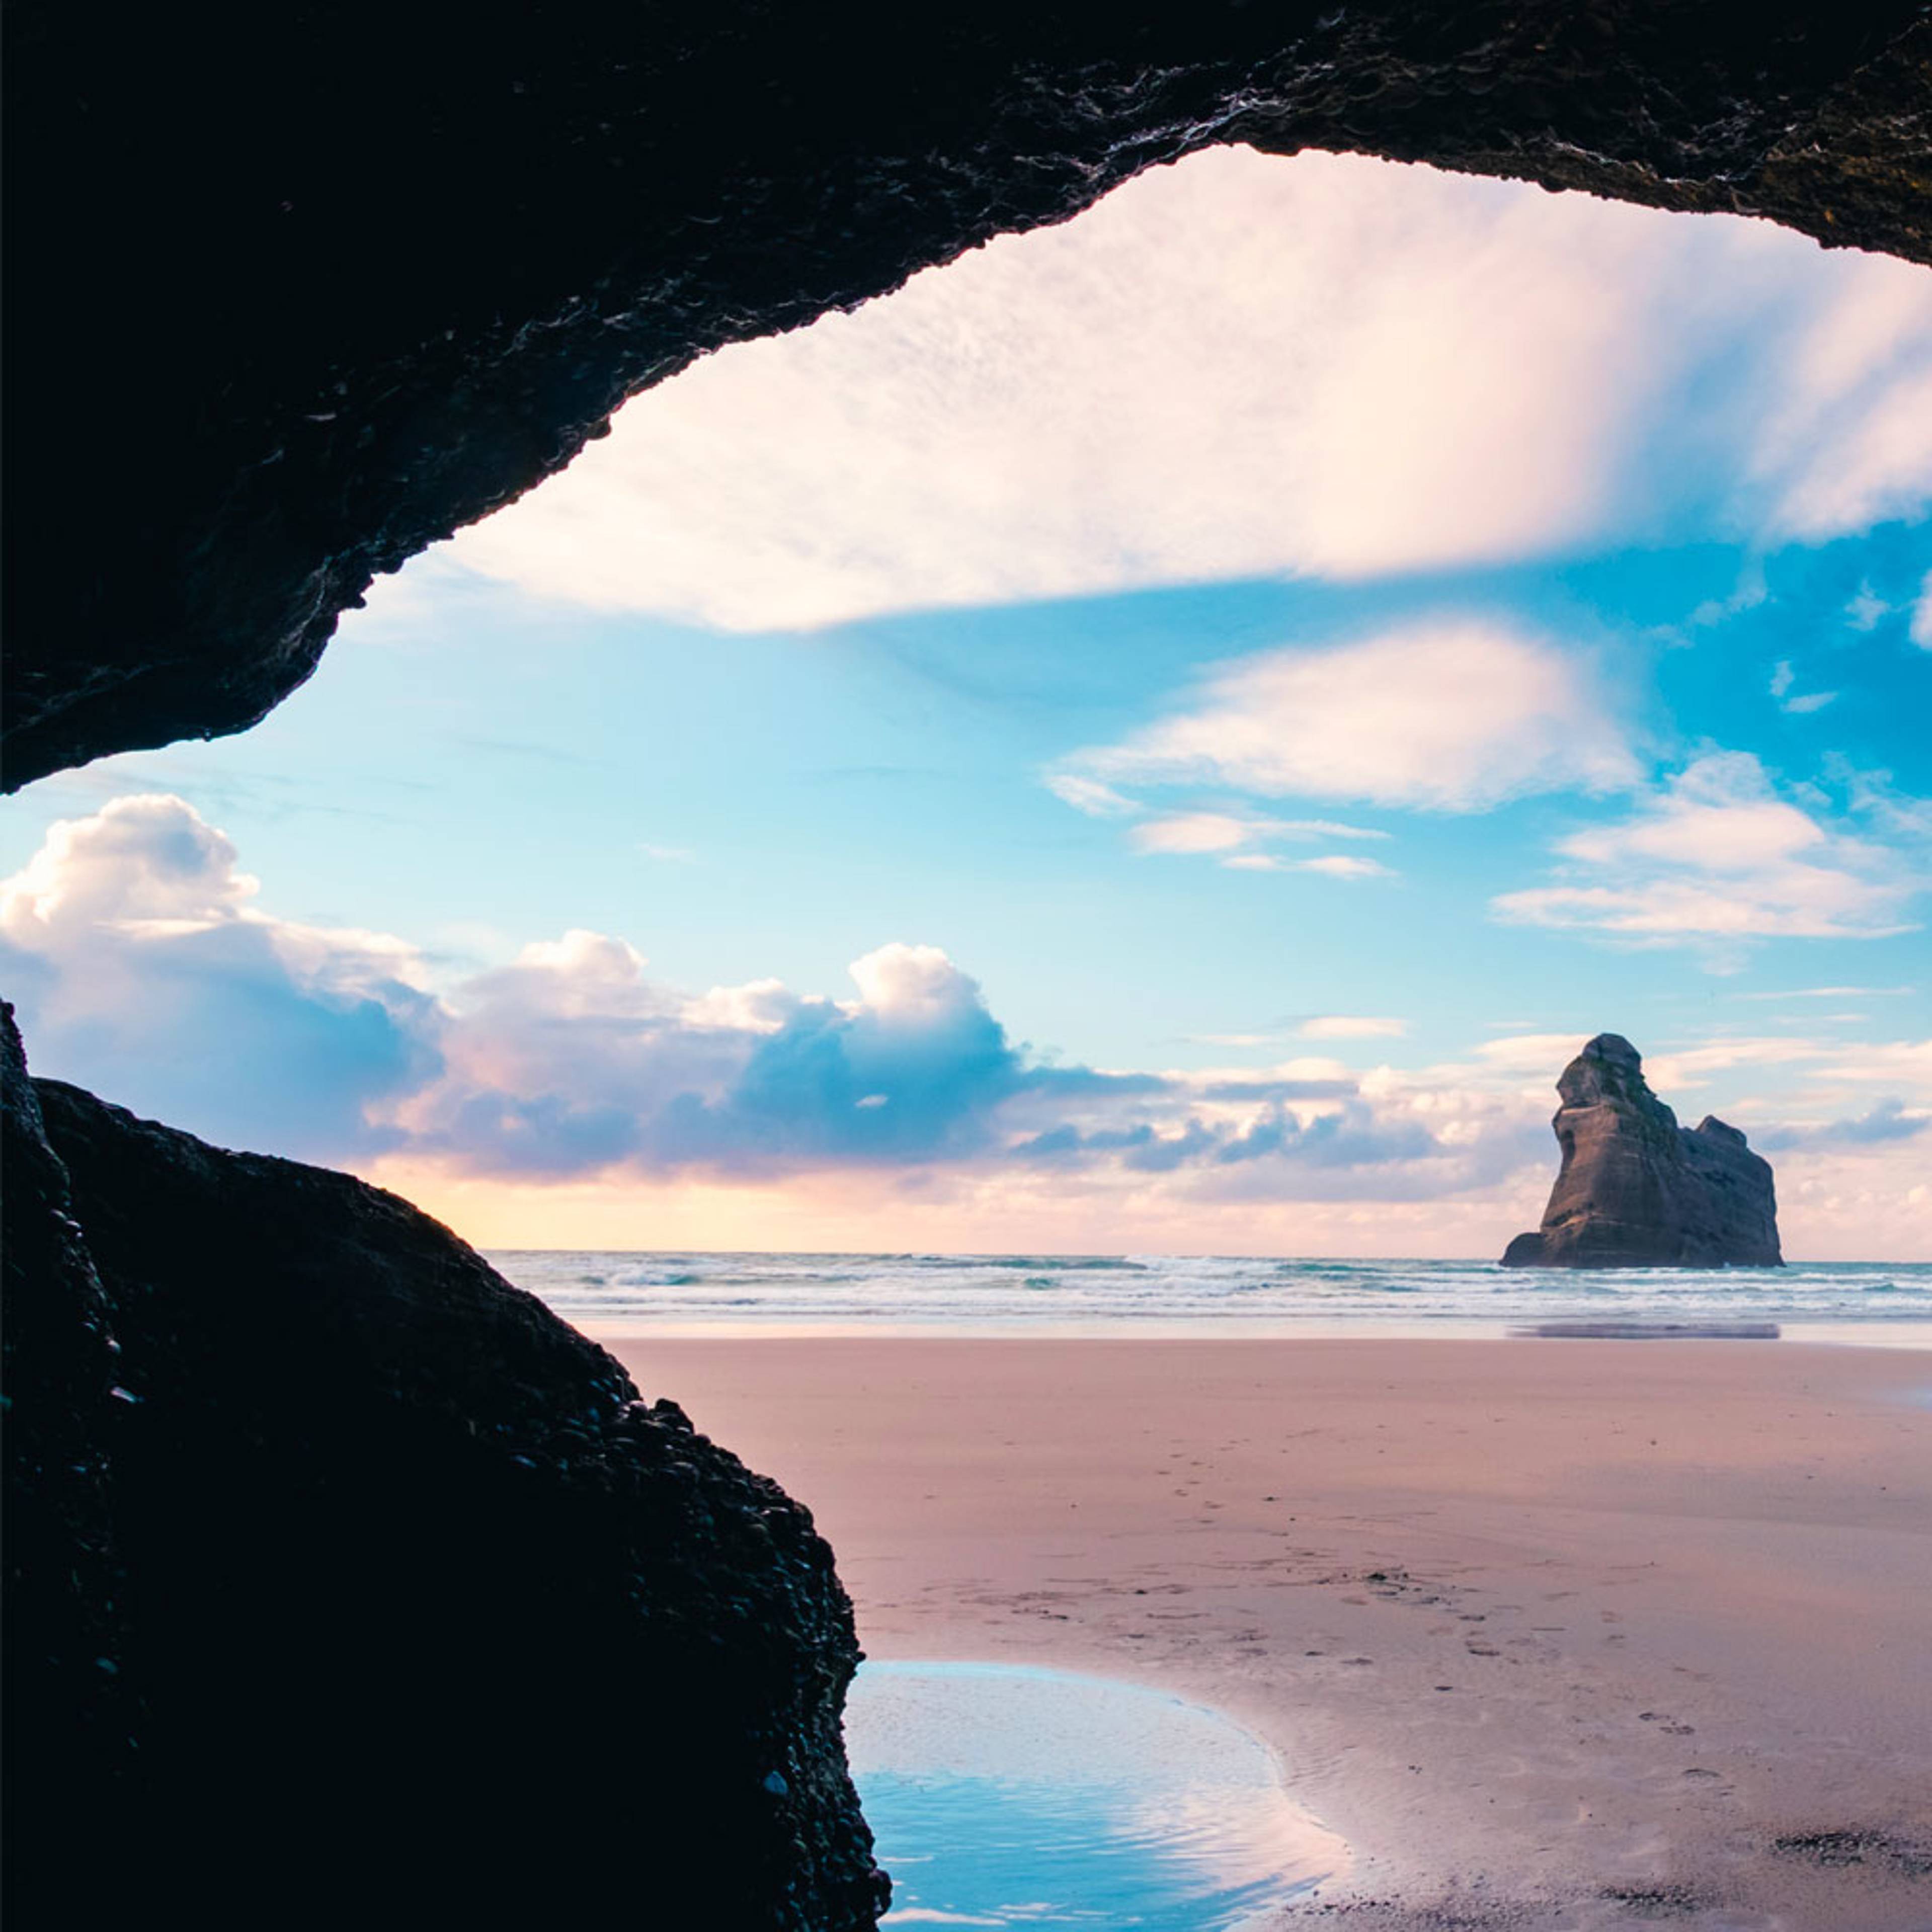 Découvrez les plus belles plages lors de votre voyage en Nouvelle-Zélande 100% sur mesure